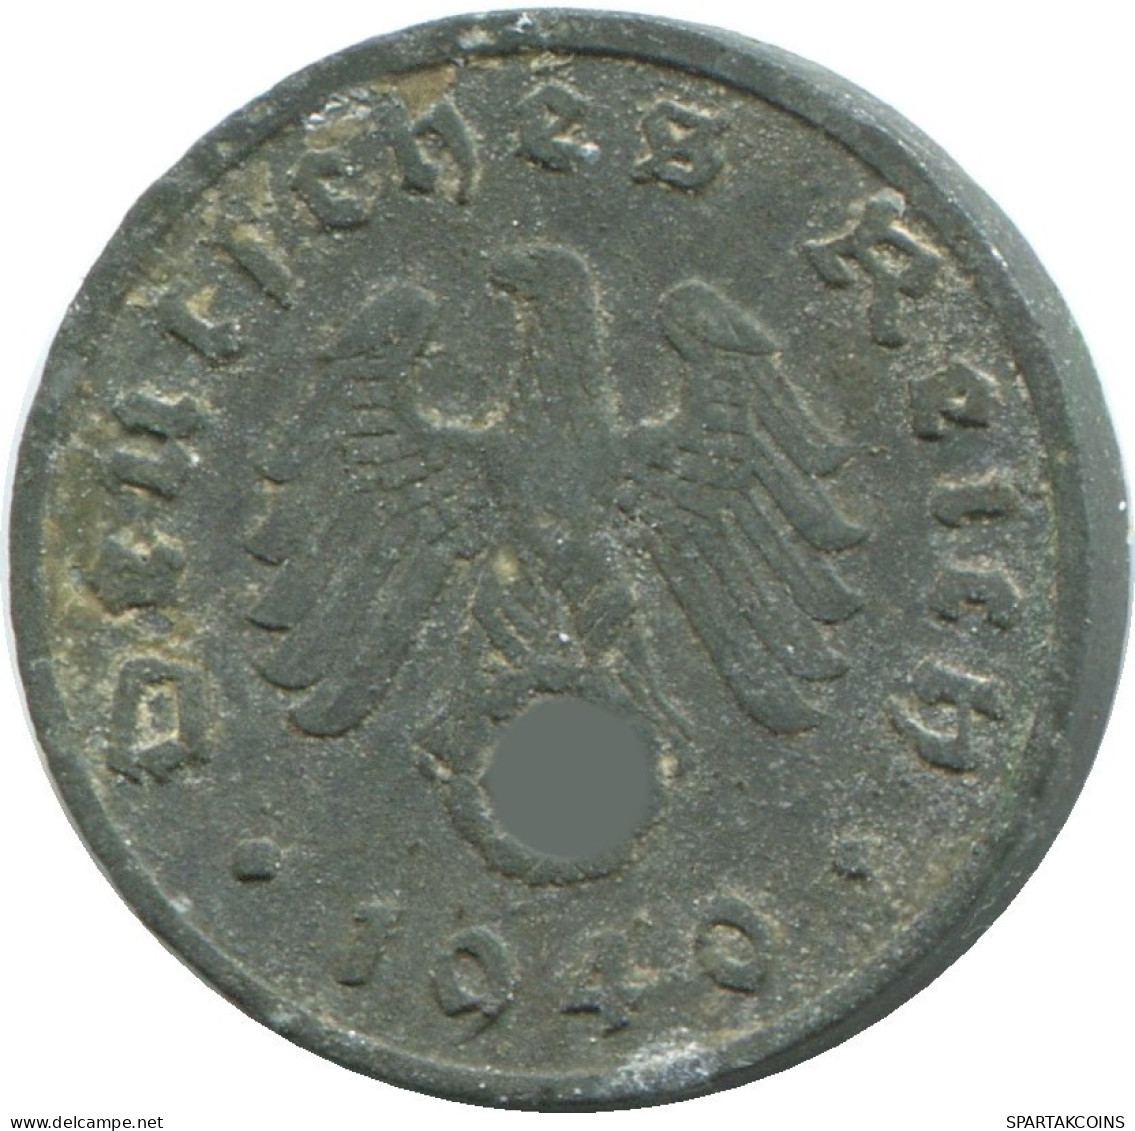 1 REICHSPFENNIG 1940 A DEUTSCHLAND Münze GERMANY #DE10418.5.D.A - 1 Reichspfennig